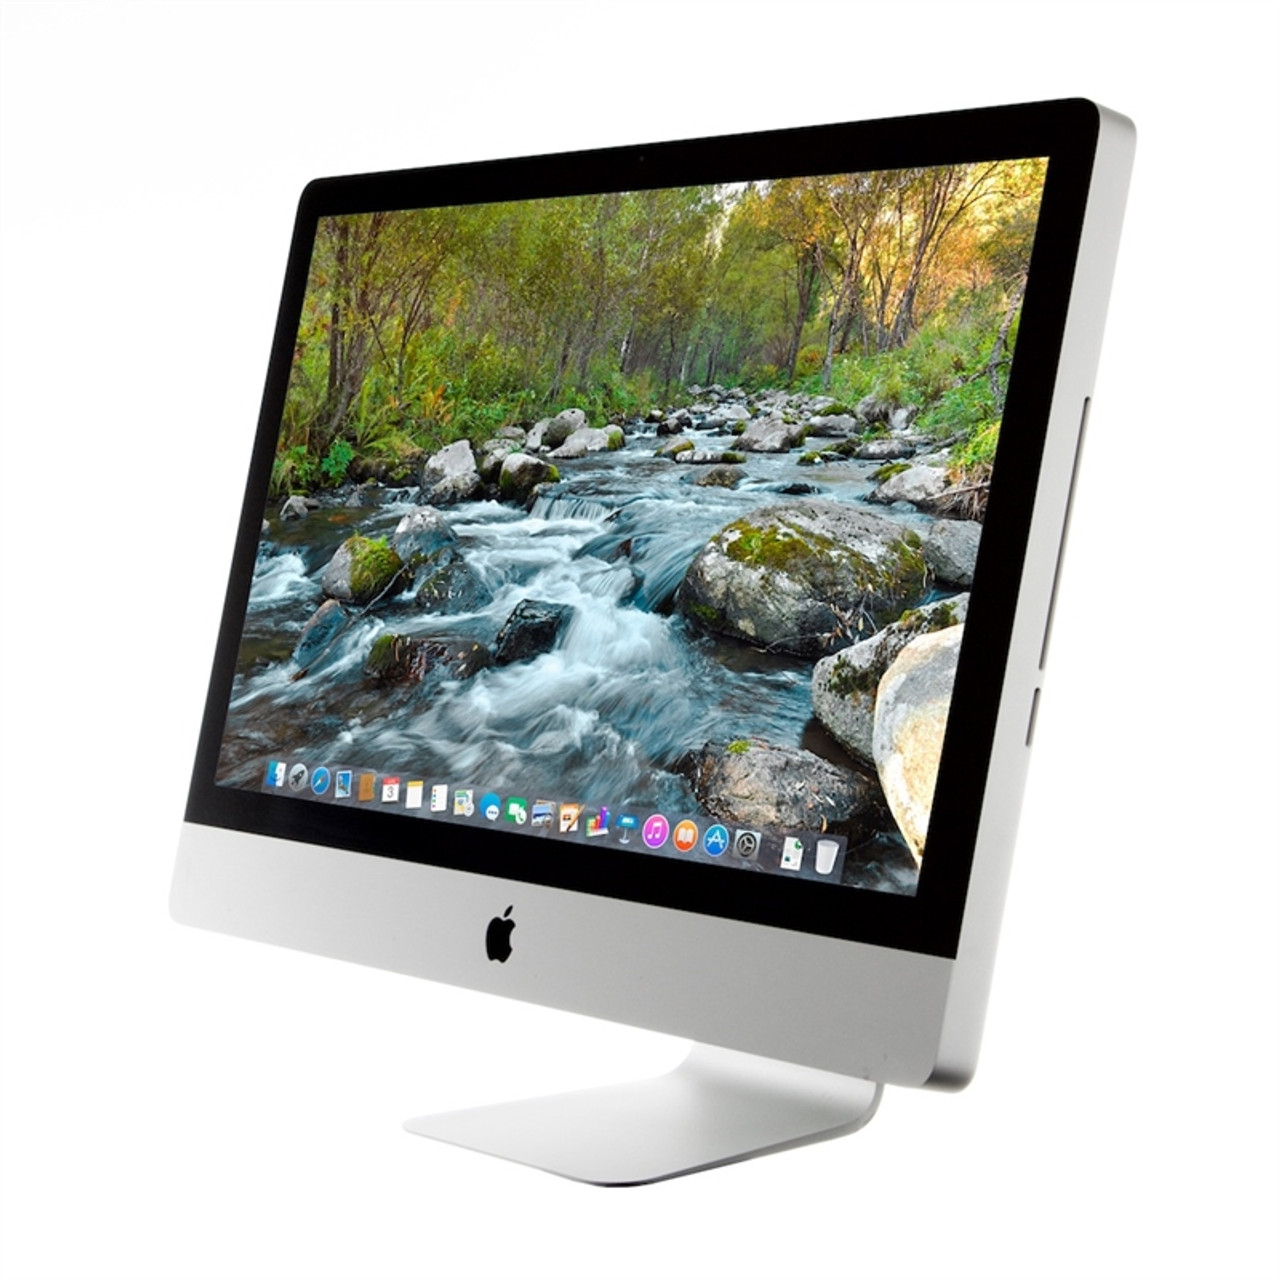 らない Apple - iMac (27-inch, Mid 2011)MC814J/A ④の通販 by 